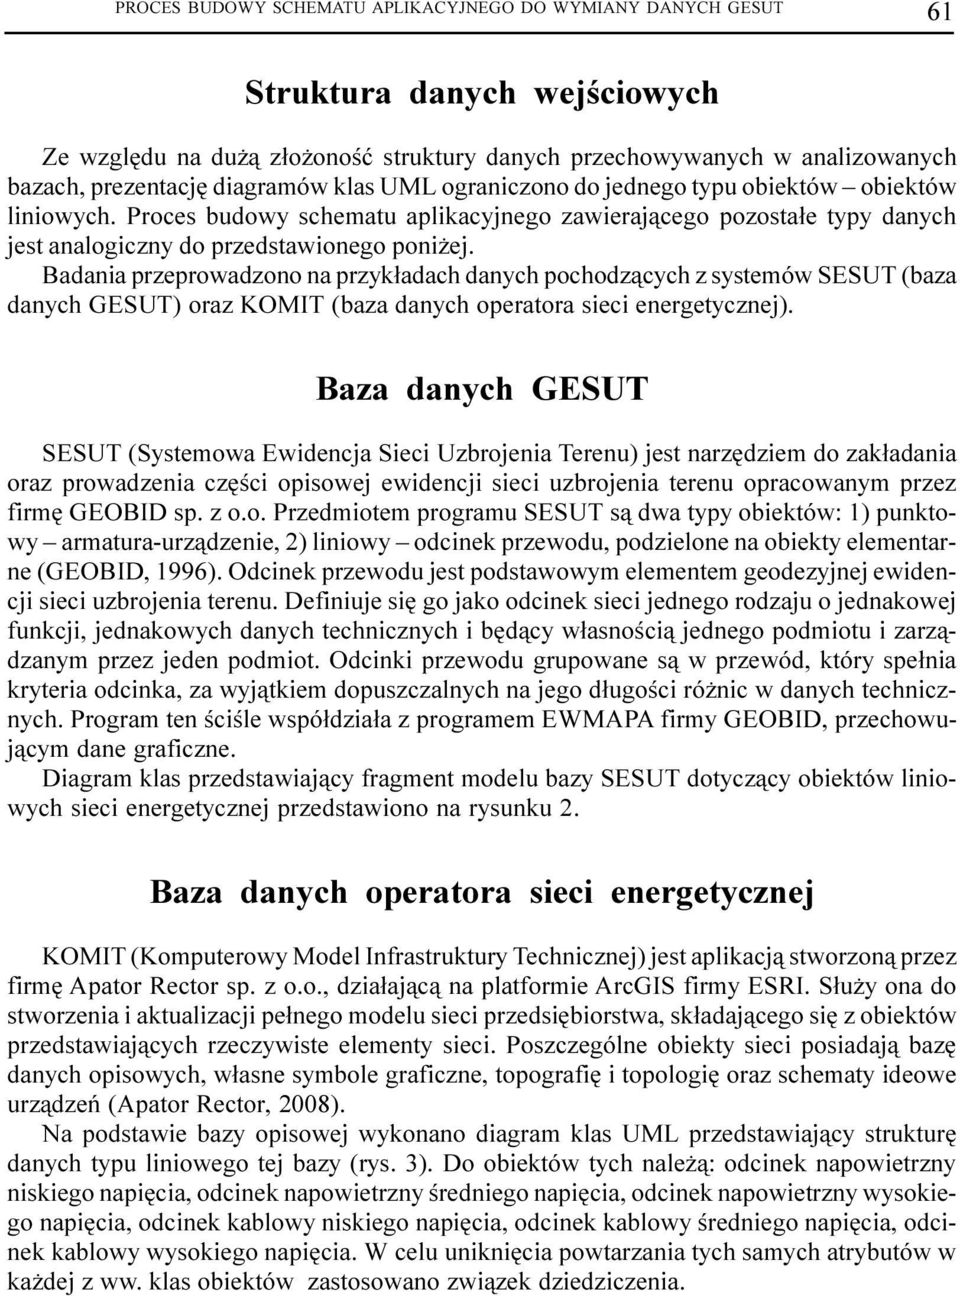 Badania przeprowadzono na przyk³adach danych pochodz¹cych z systemów SESUT (baza danych GESUT) oraz KOMIT (baza danych operatora sieci energetycznej).